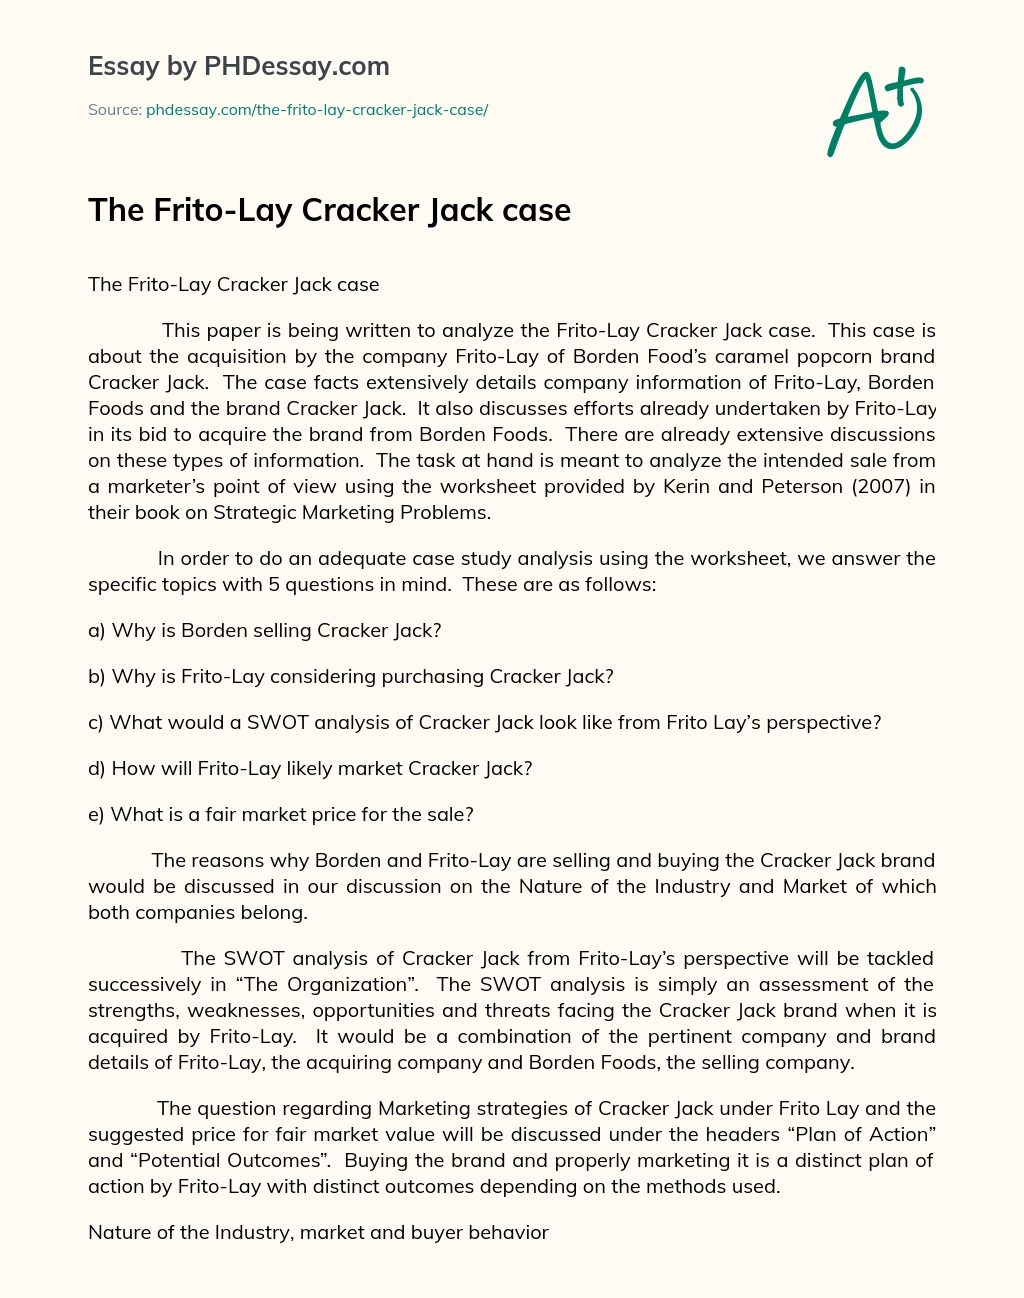 The Frito-Lay Cracker Jack case essay